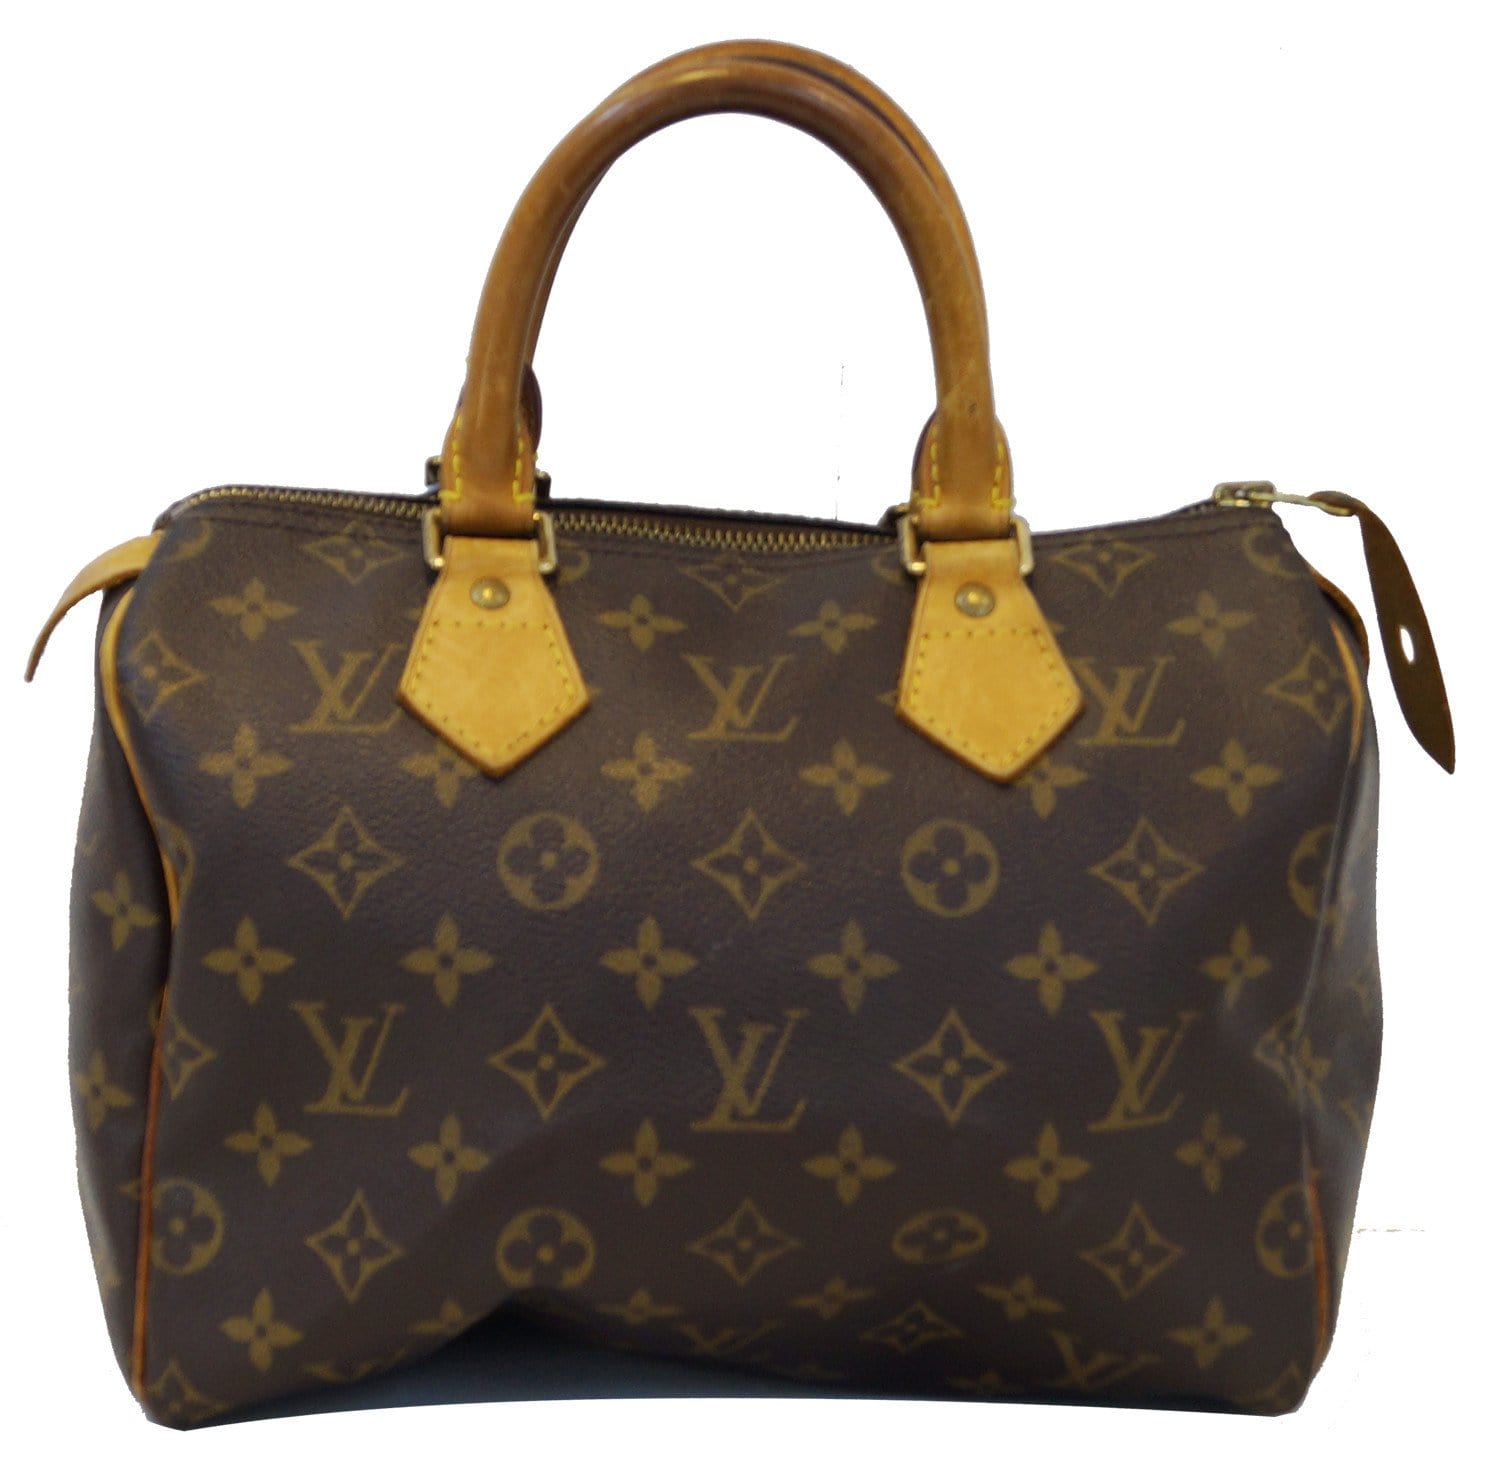 Speedy glitter handbag Louis Vuitton Brown in Glitter - 36301945